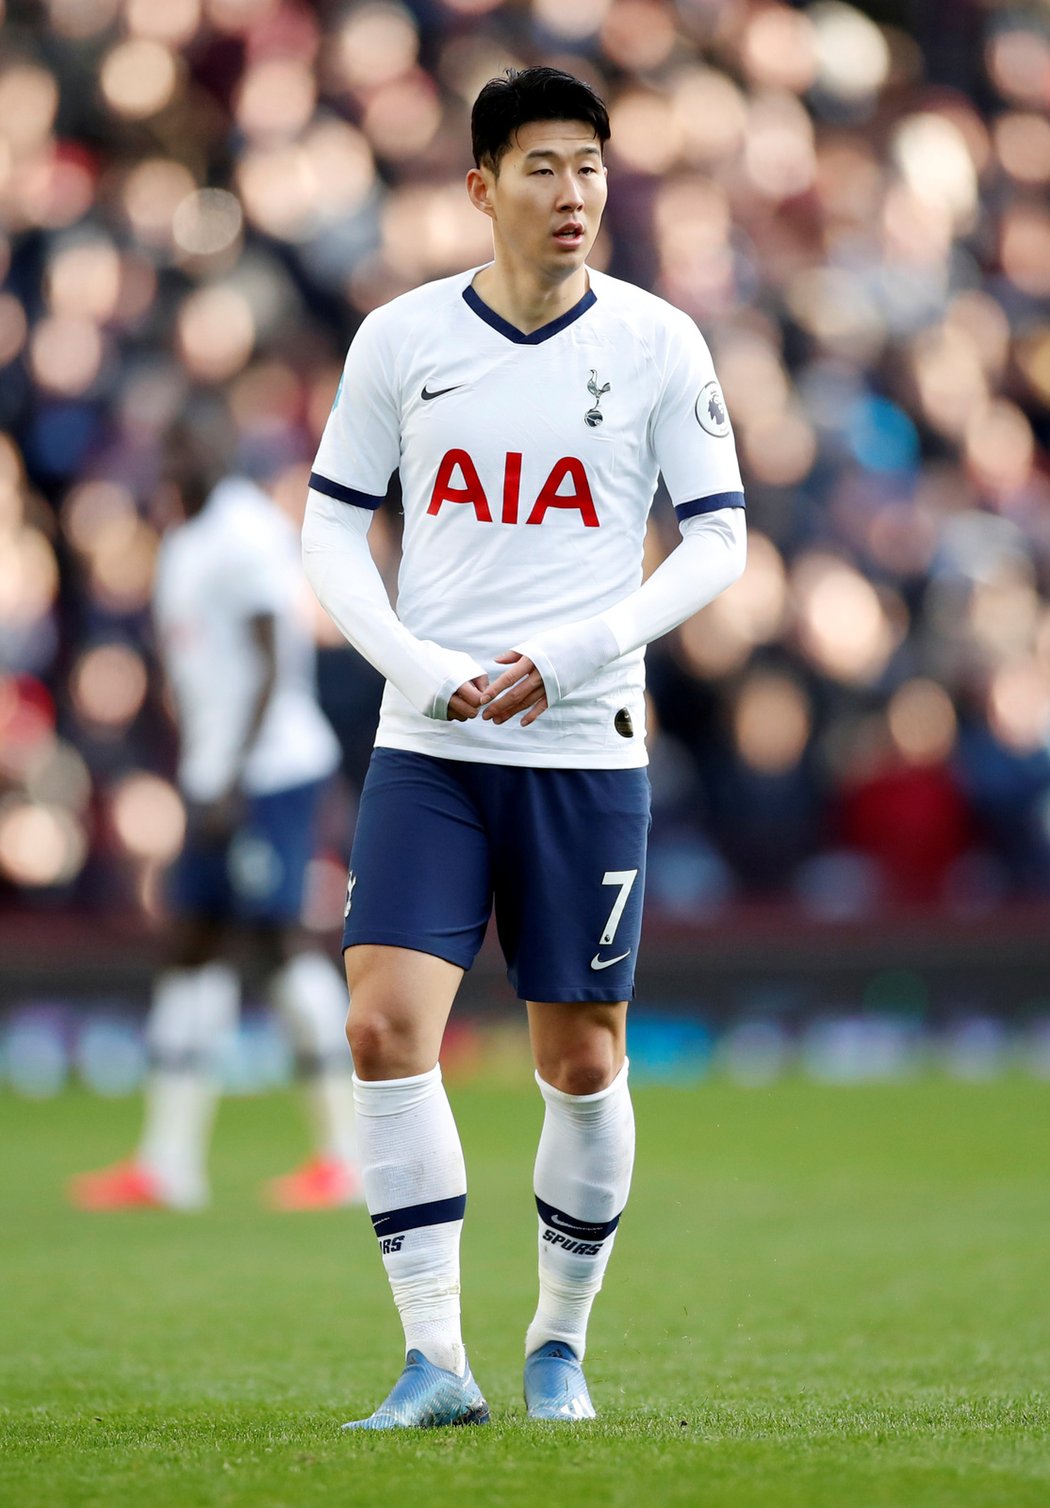 Ofenzivní hráč Son v dresu Tottenhamu